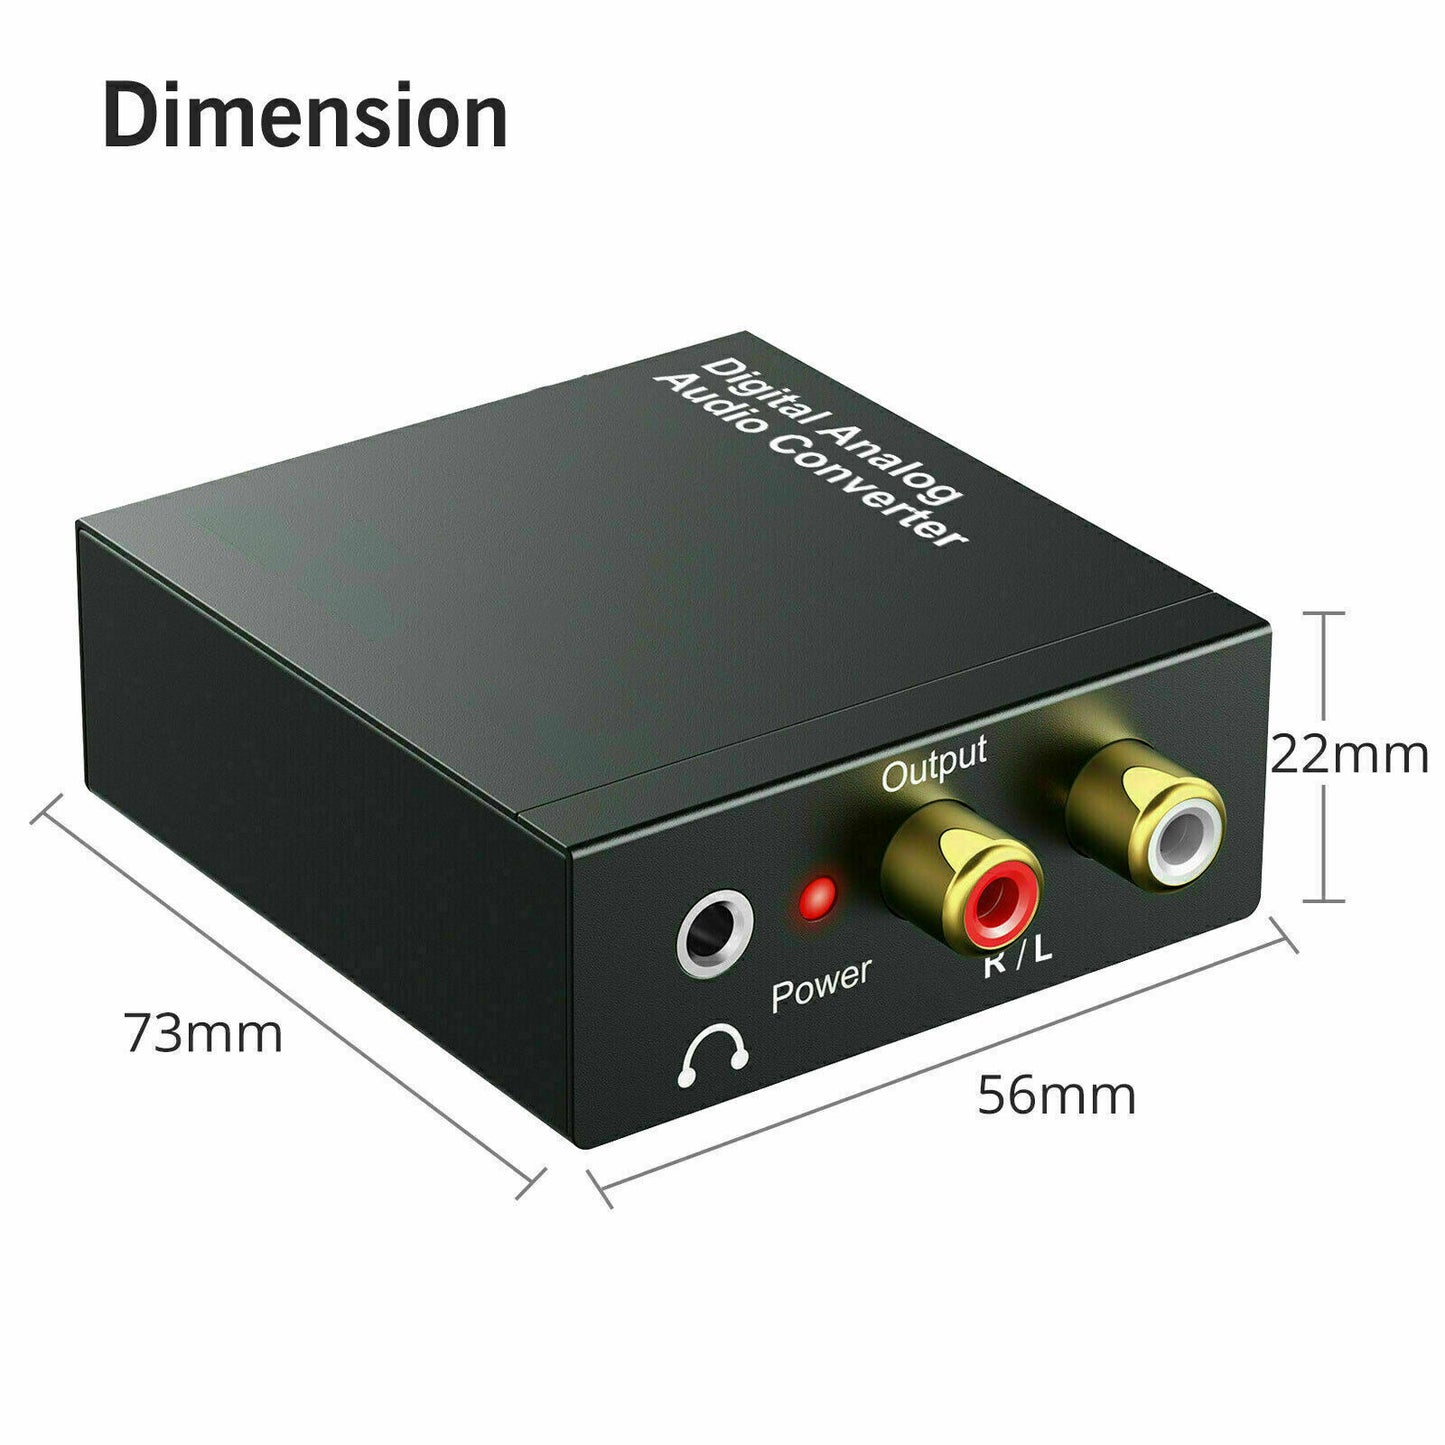 Optisk koaksial Toslink Digital til Analog Audio Converter Adapter RCA 3,5 mm L/R